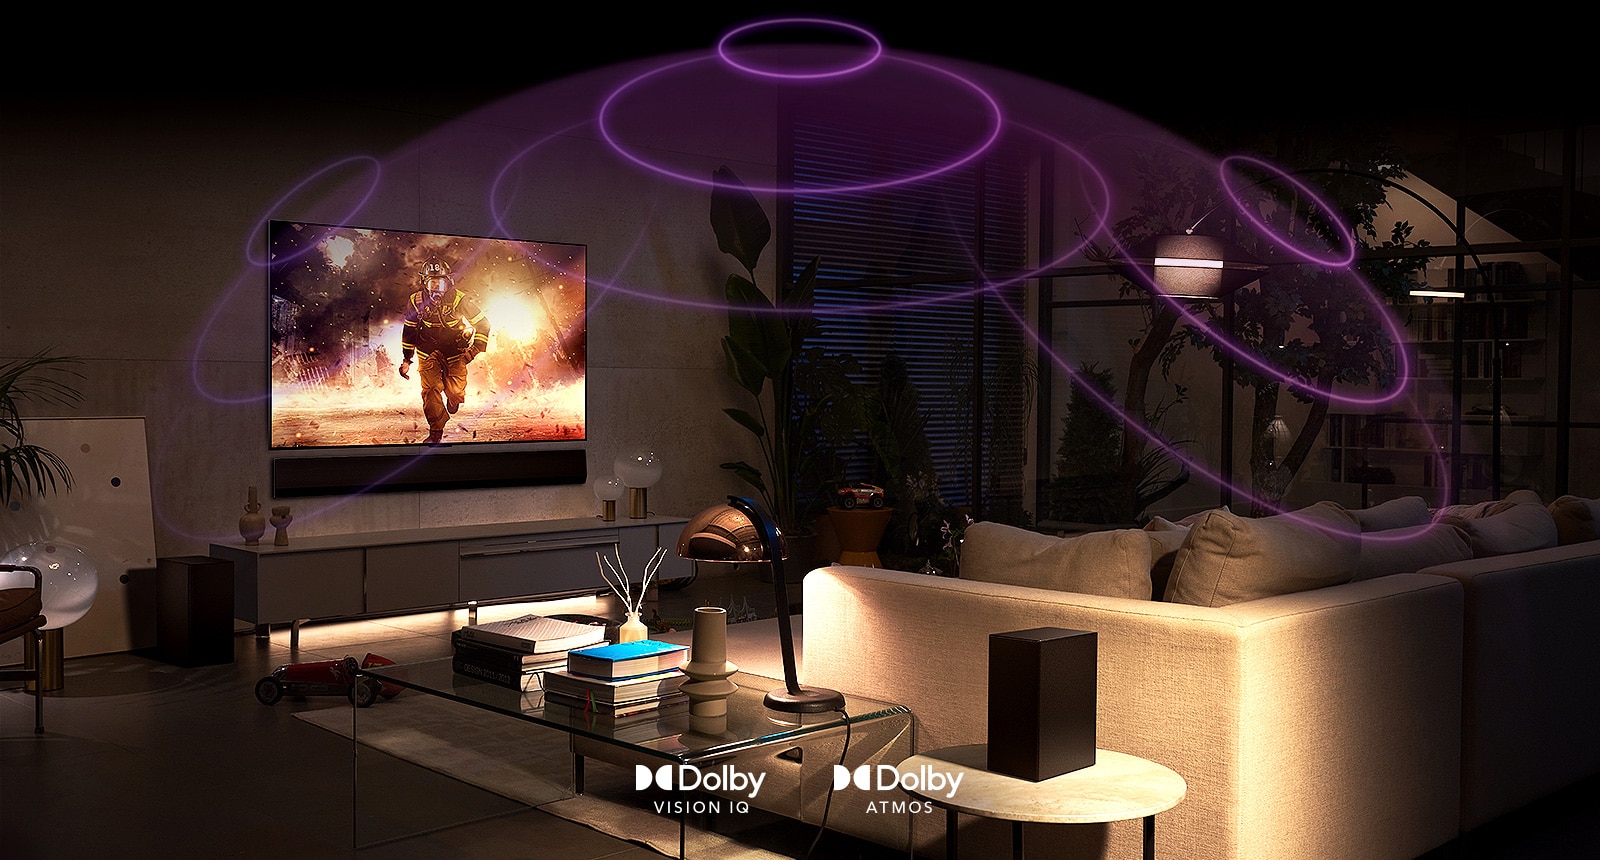 تصویری از تلویزیون OLED ال‌جی در اتاقی که در حال پخش یک فیلم اکشن است. امواج صوتی گنبدی بین مبل و تلویزیون ایجاد می کند که صدای فضایی فراگیر را به تصویر می‌کشد.